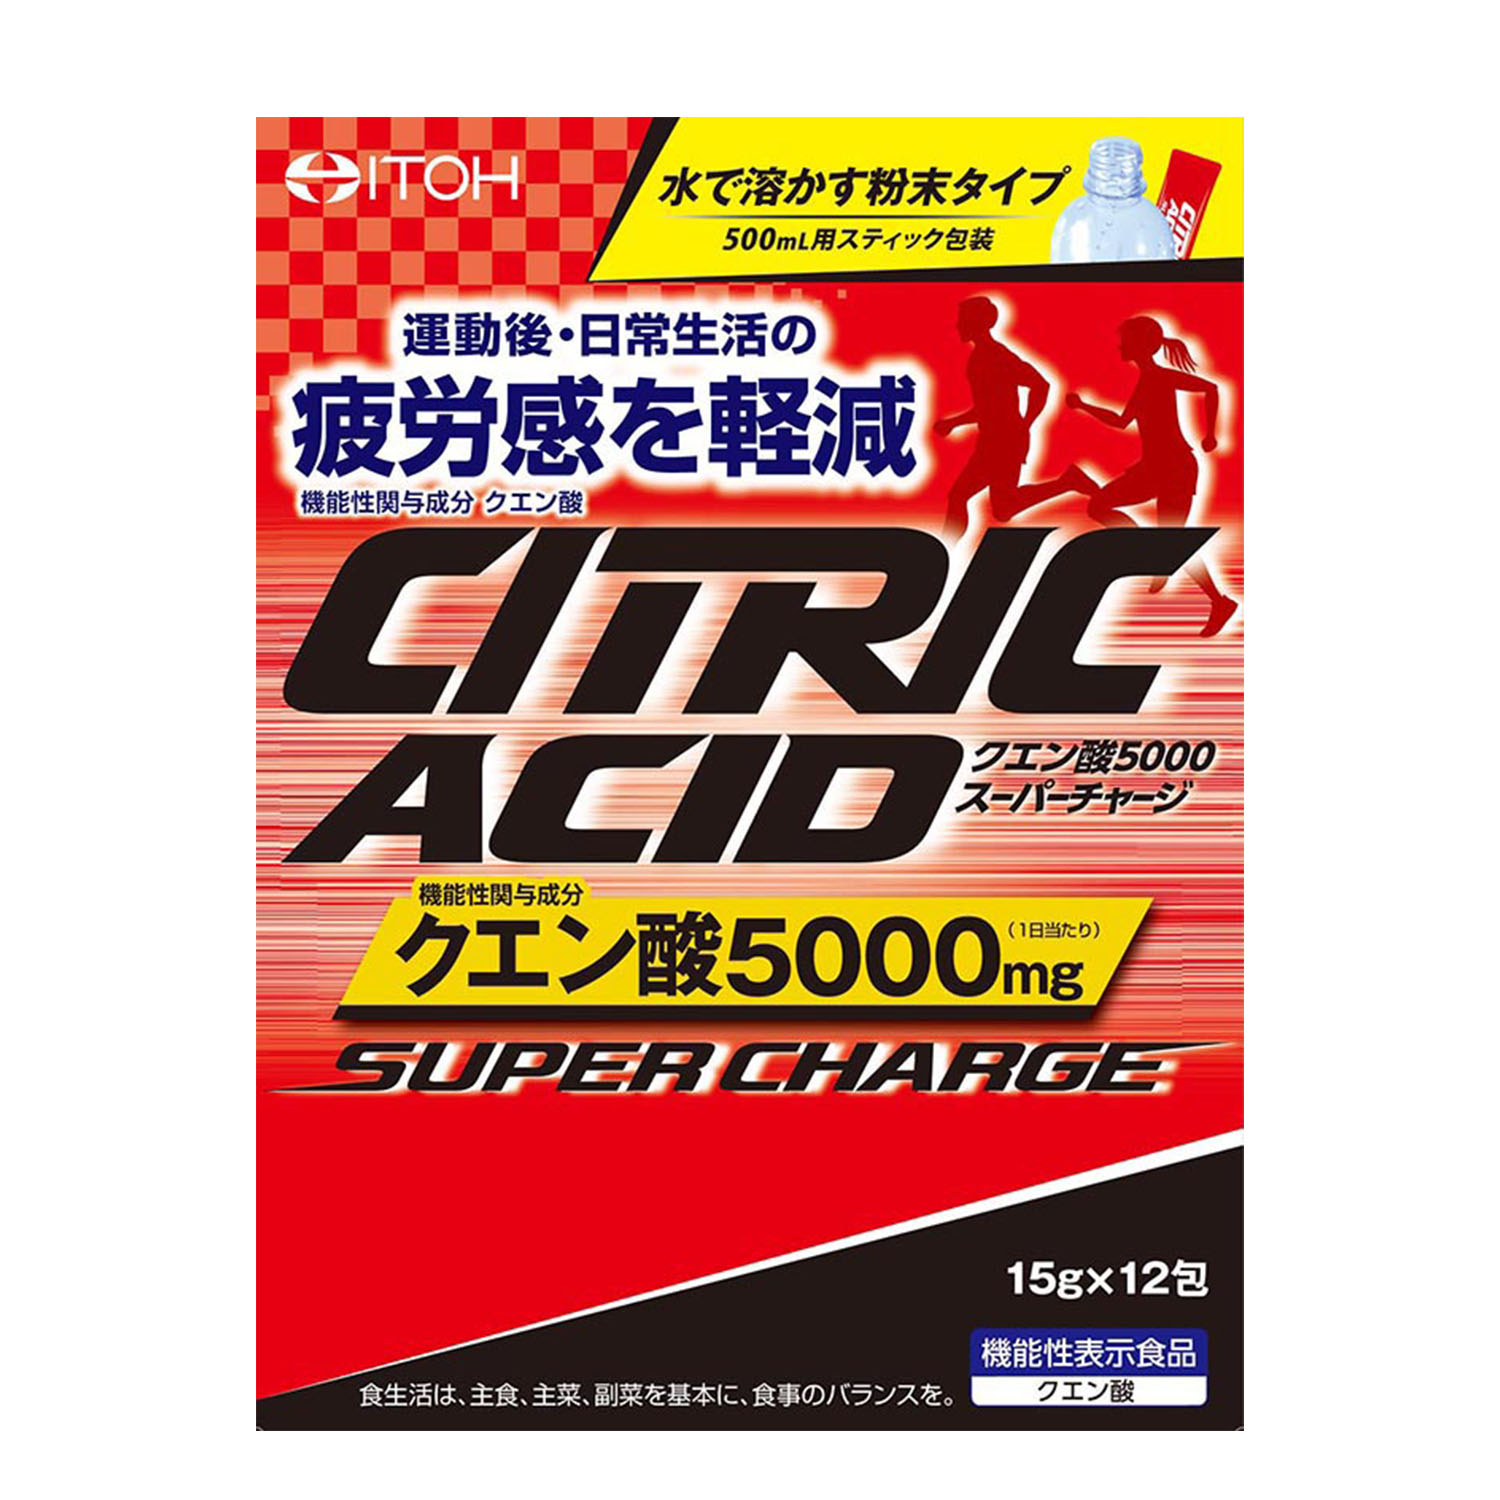 クエン酸5000スーパーチャージ 健康食品のことなら井藤漢方製薬